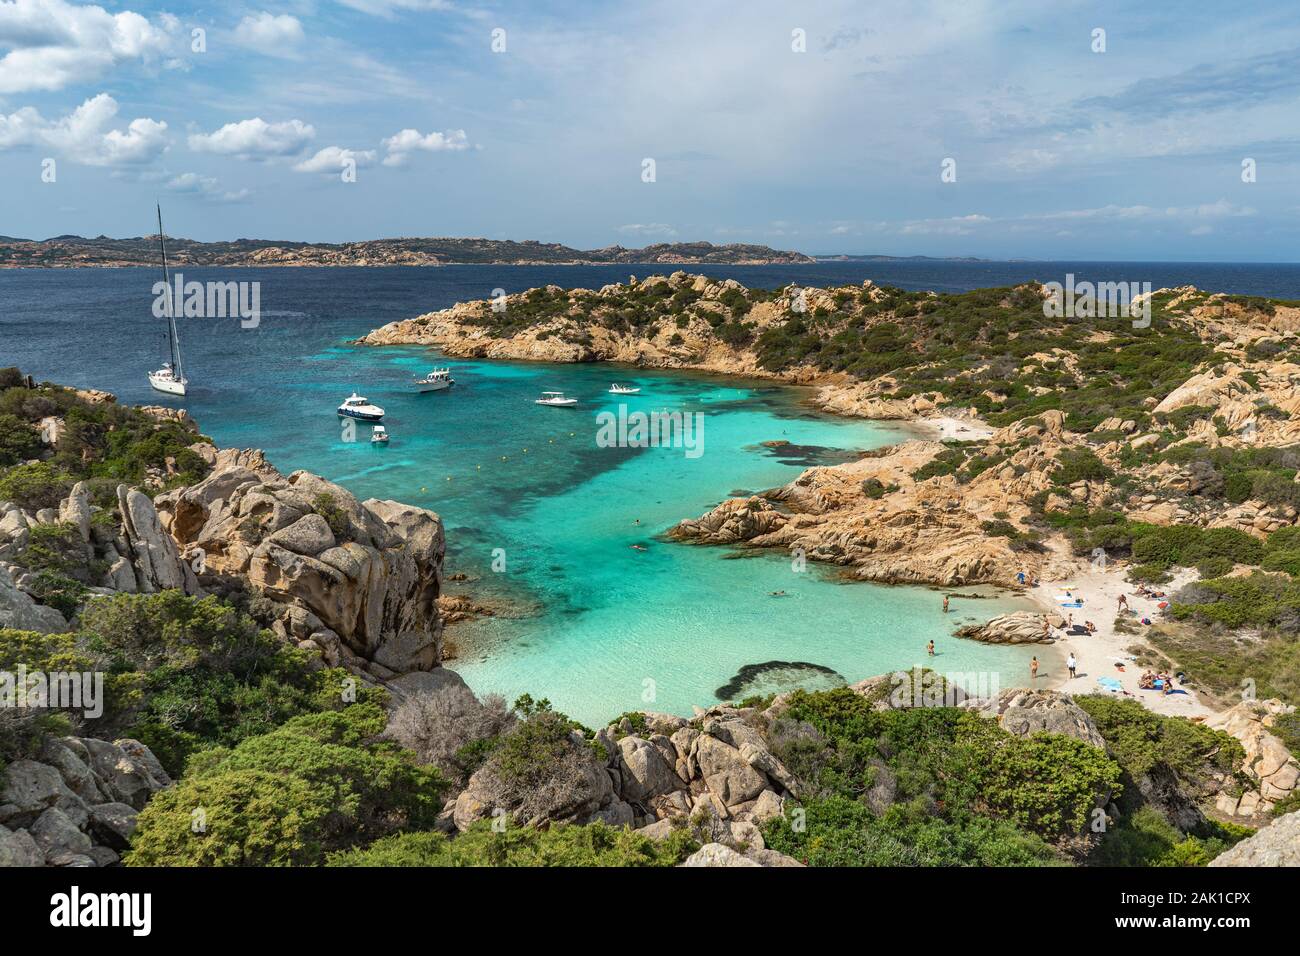 Türkisblaues Wasser von Cala Napoletana, Insel Caprera, Sardinien. Schönes Reiseziel - das Maddalena Archipel, besten Strände Europas Stockfoto